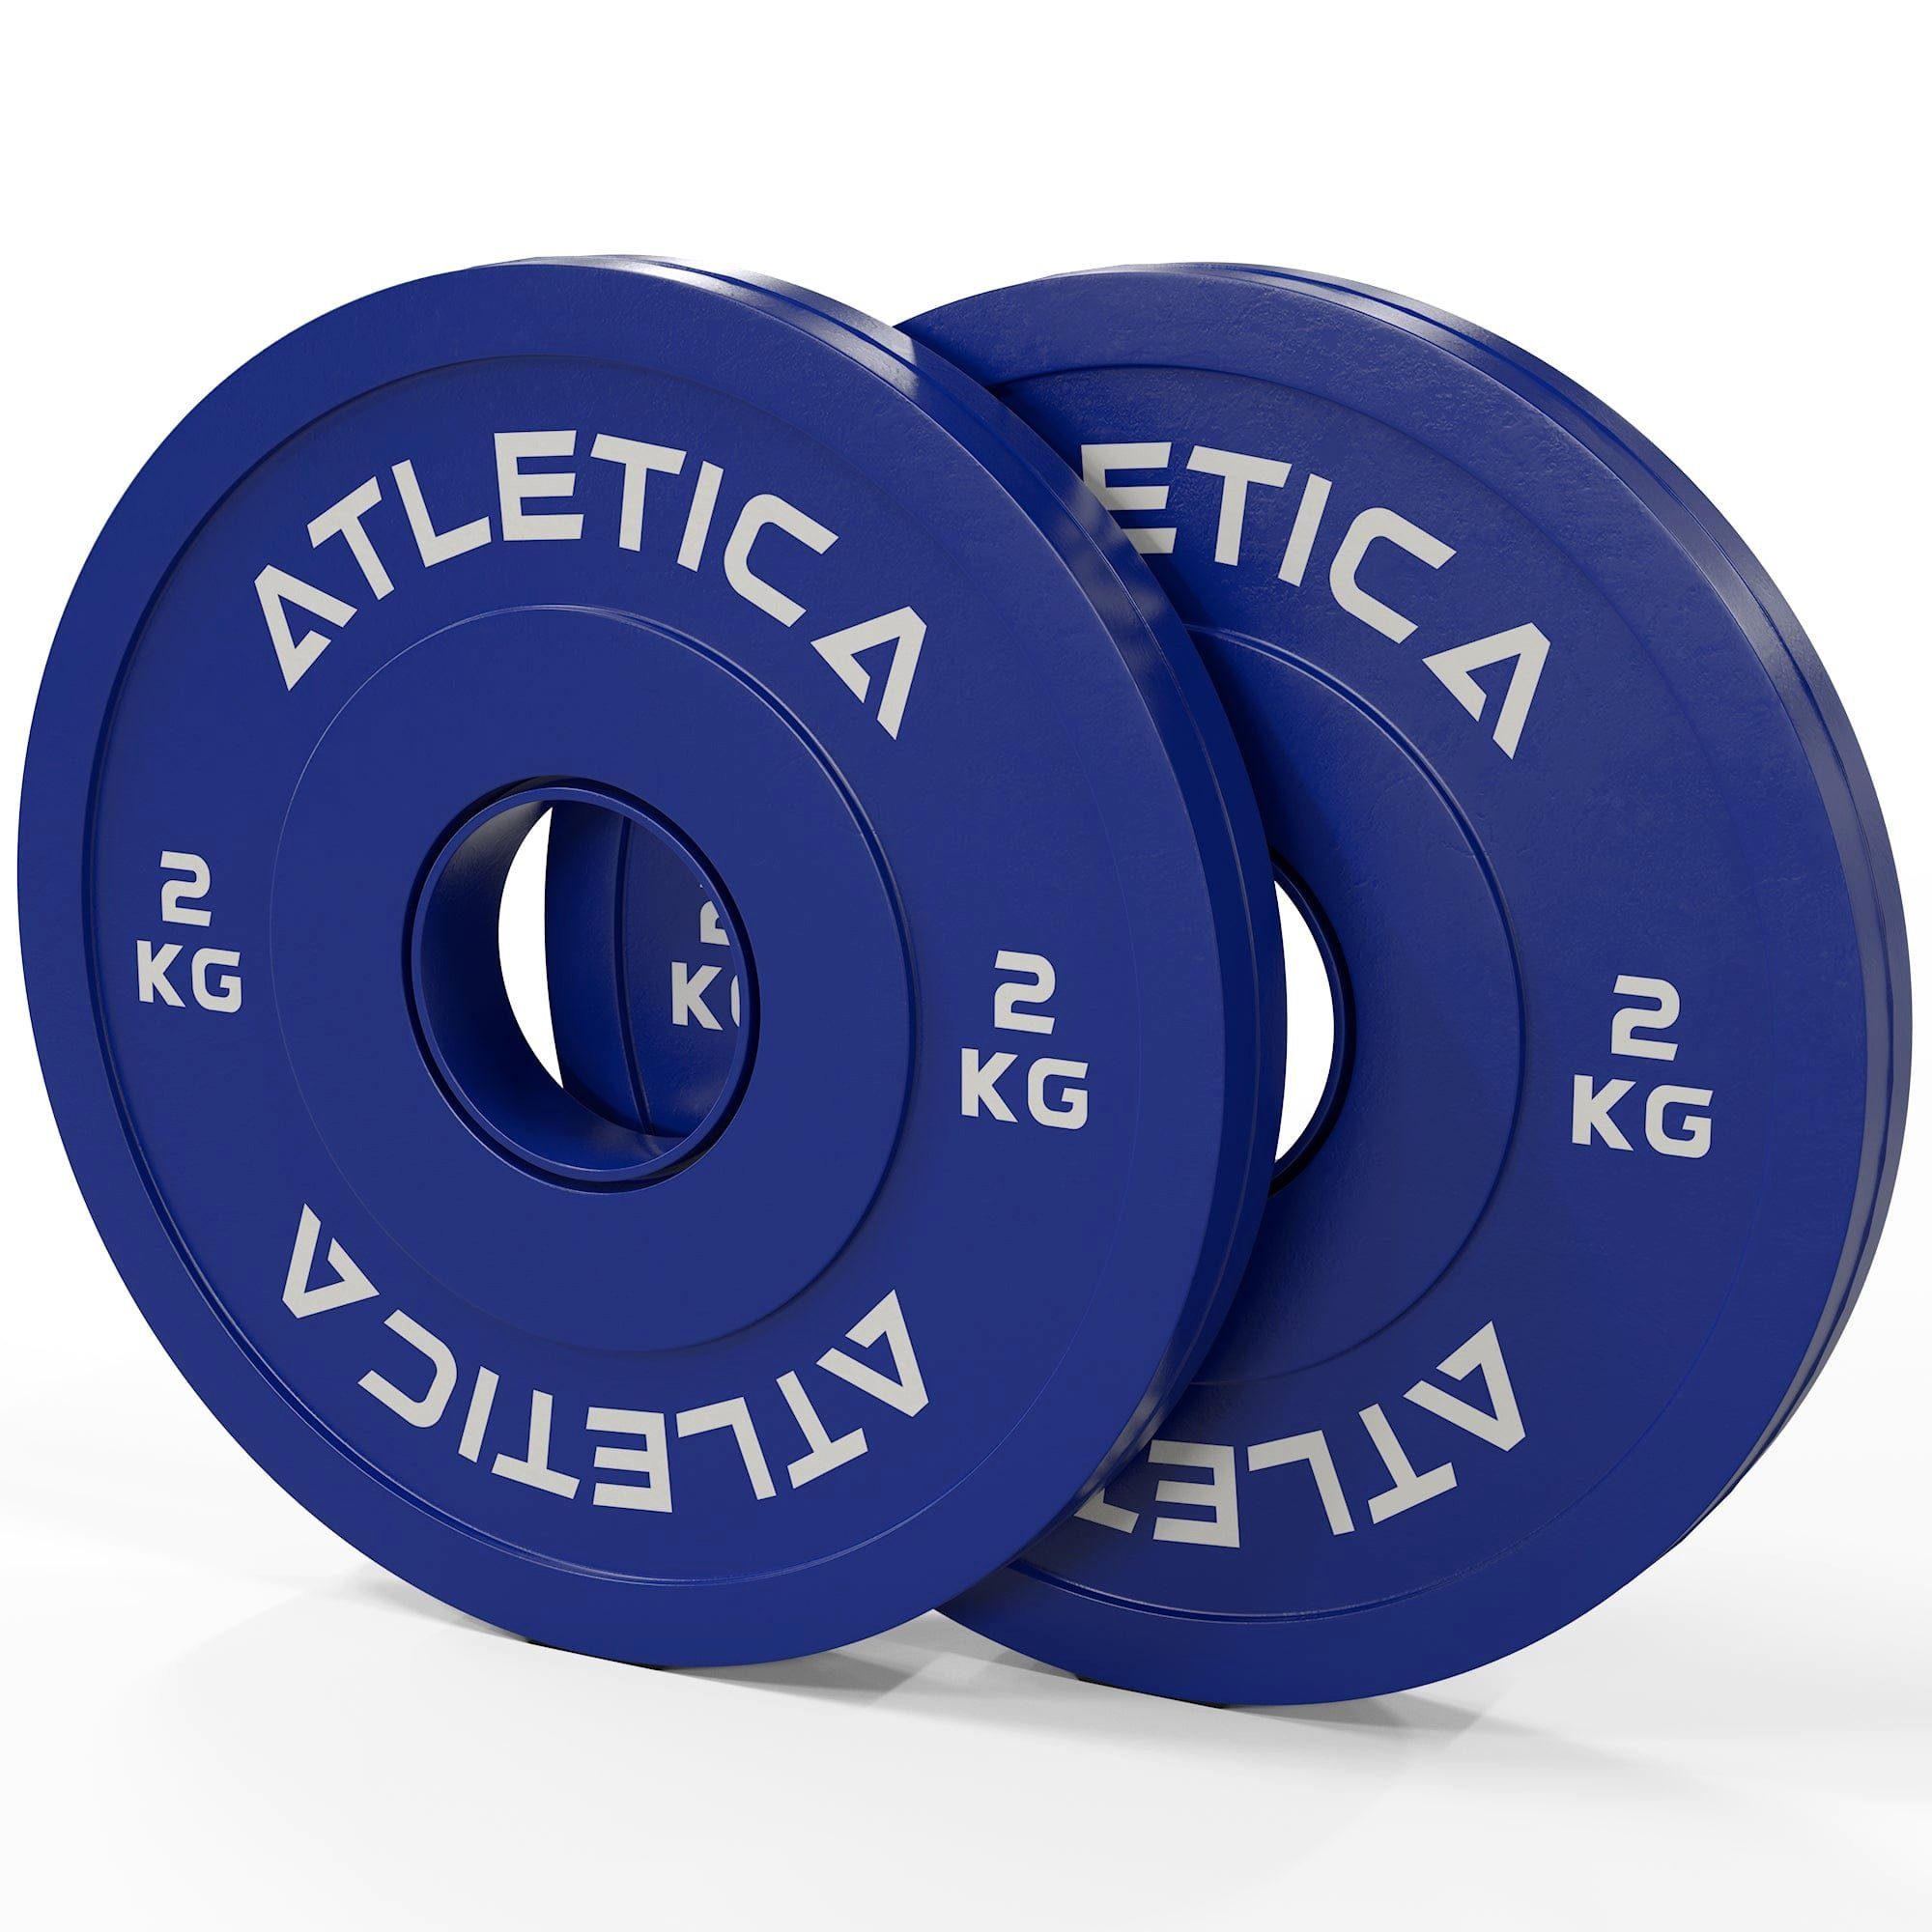 ATLETICA Hantelscheiben Fractional Plates, 15 kg Wettkampf-Flair paarweise, gummiert, Set